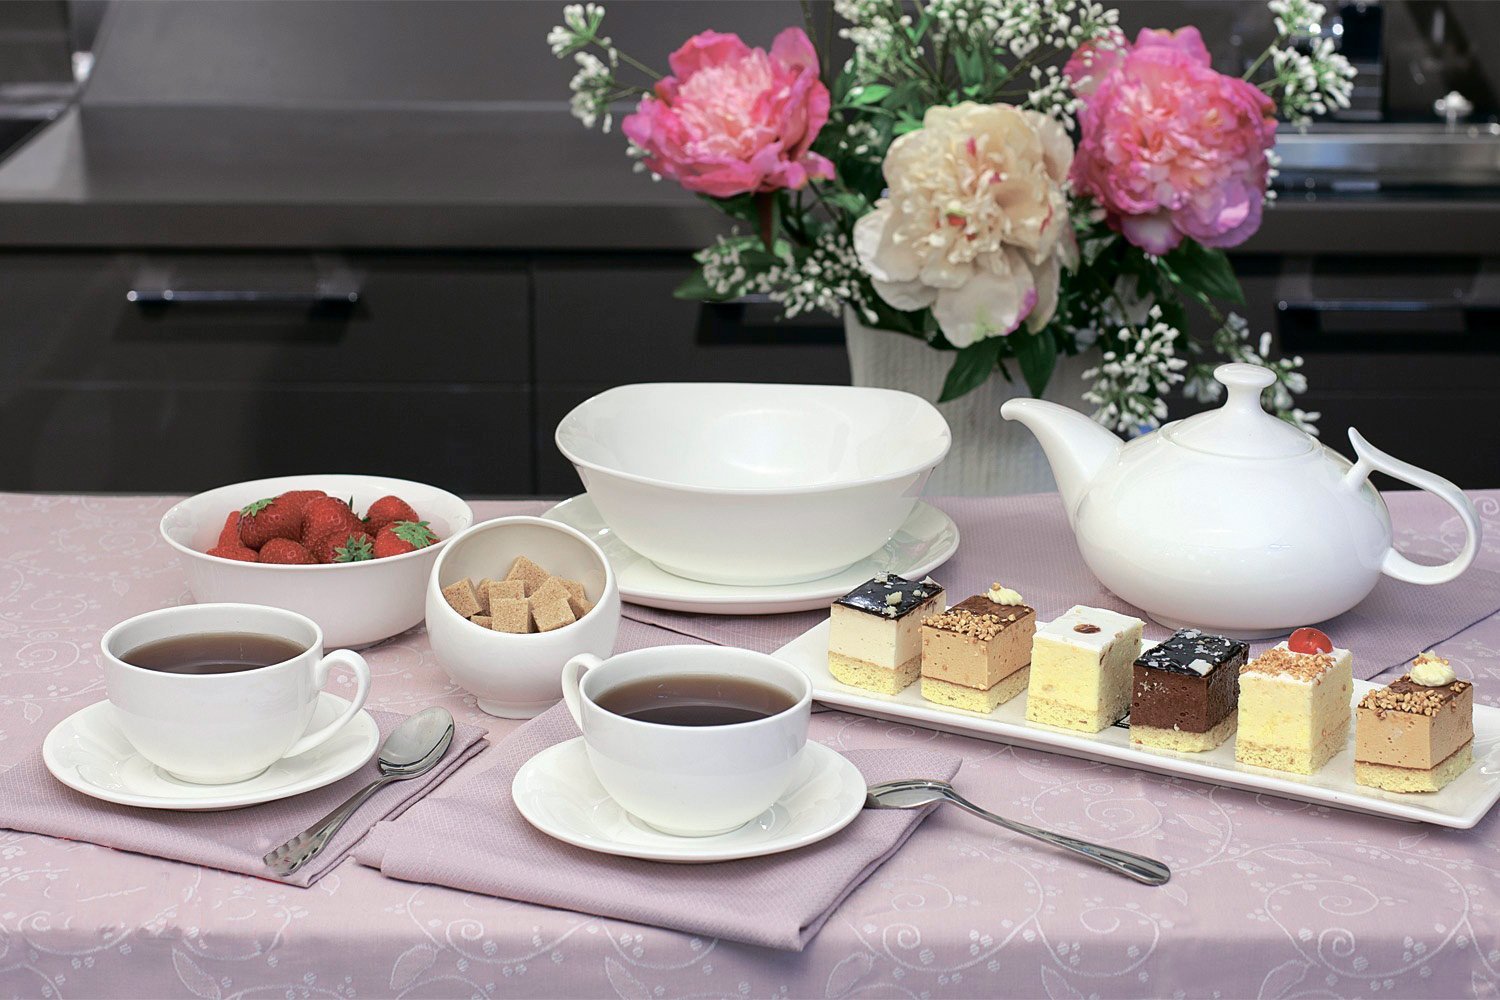 Set of 6 Fine Porcelain Sugar/Dessert Bowls